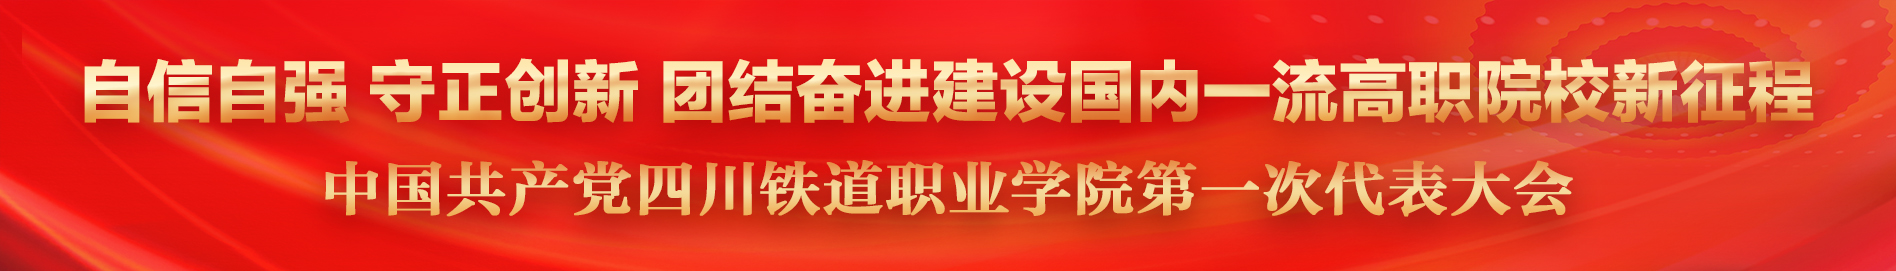 中国共产党必发集团全部平台首页第一次代表大会